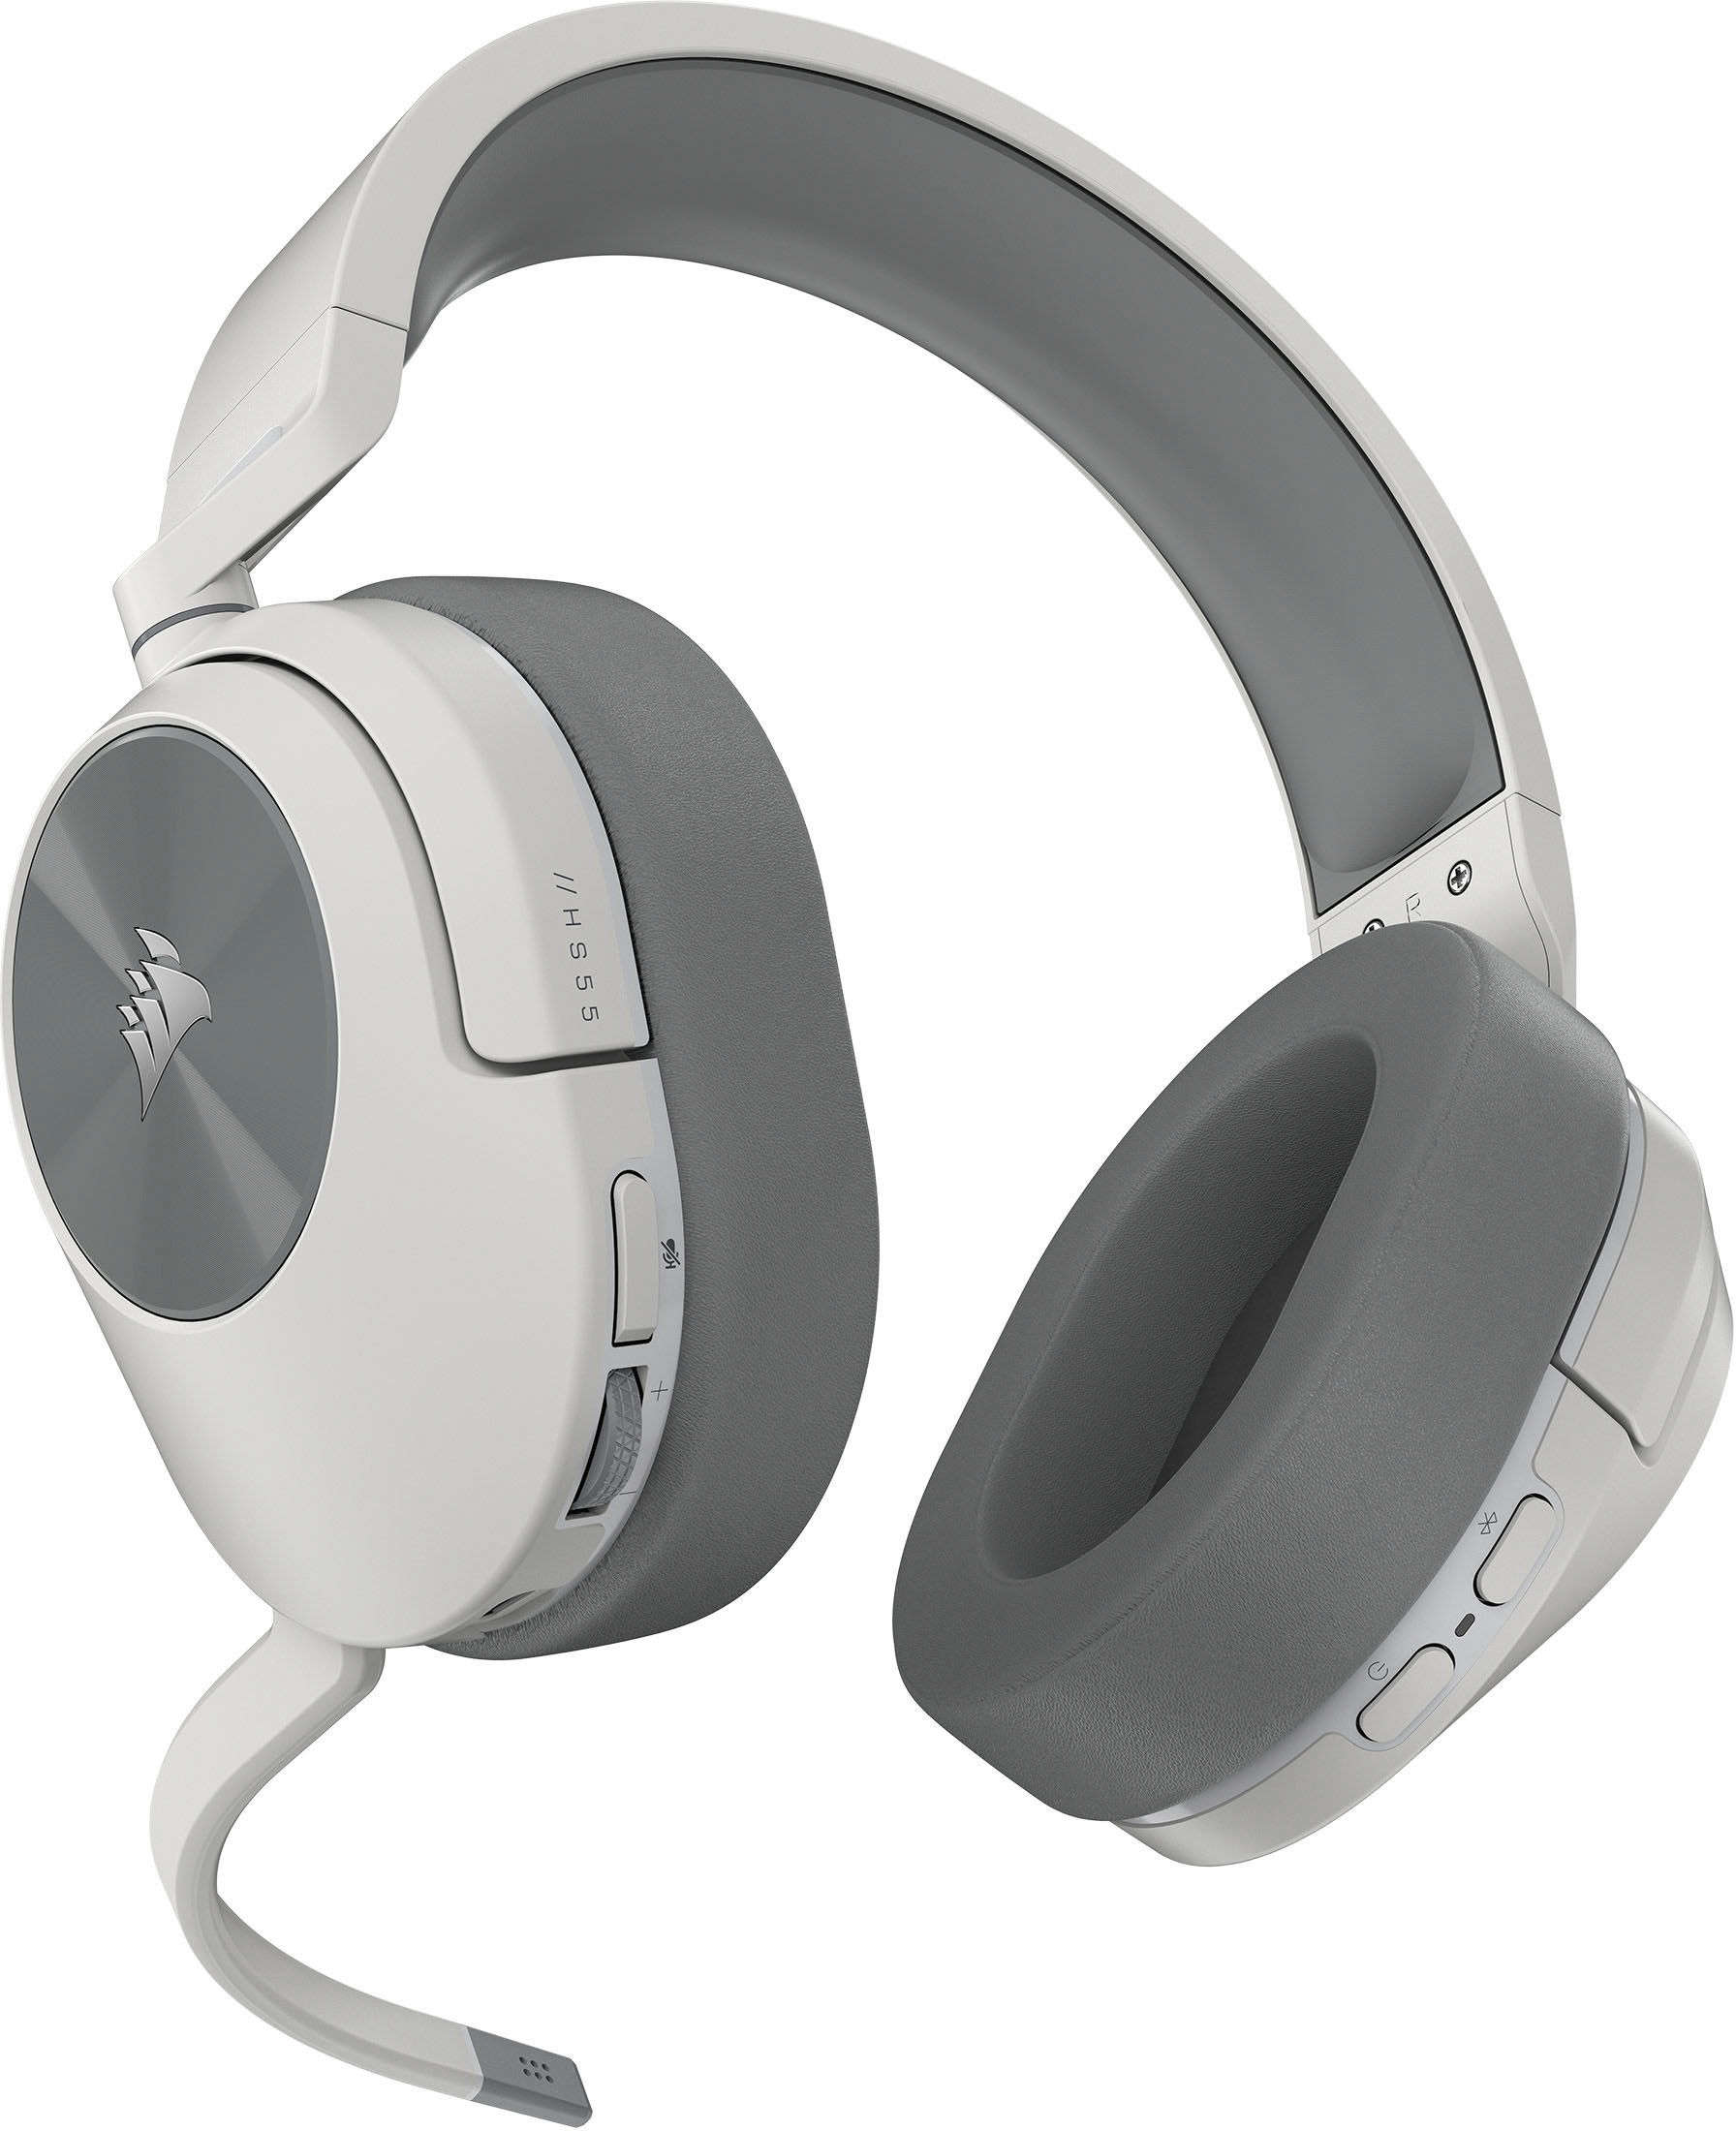 Corsair HS55 Wireless review: a lightweight wireless headset